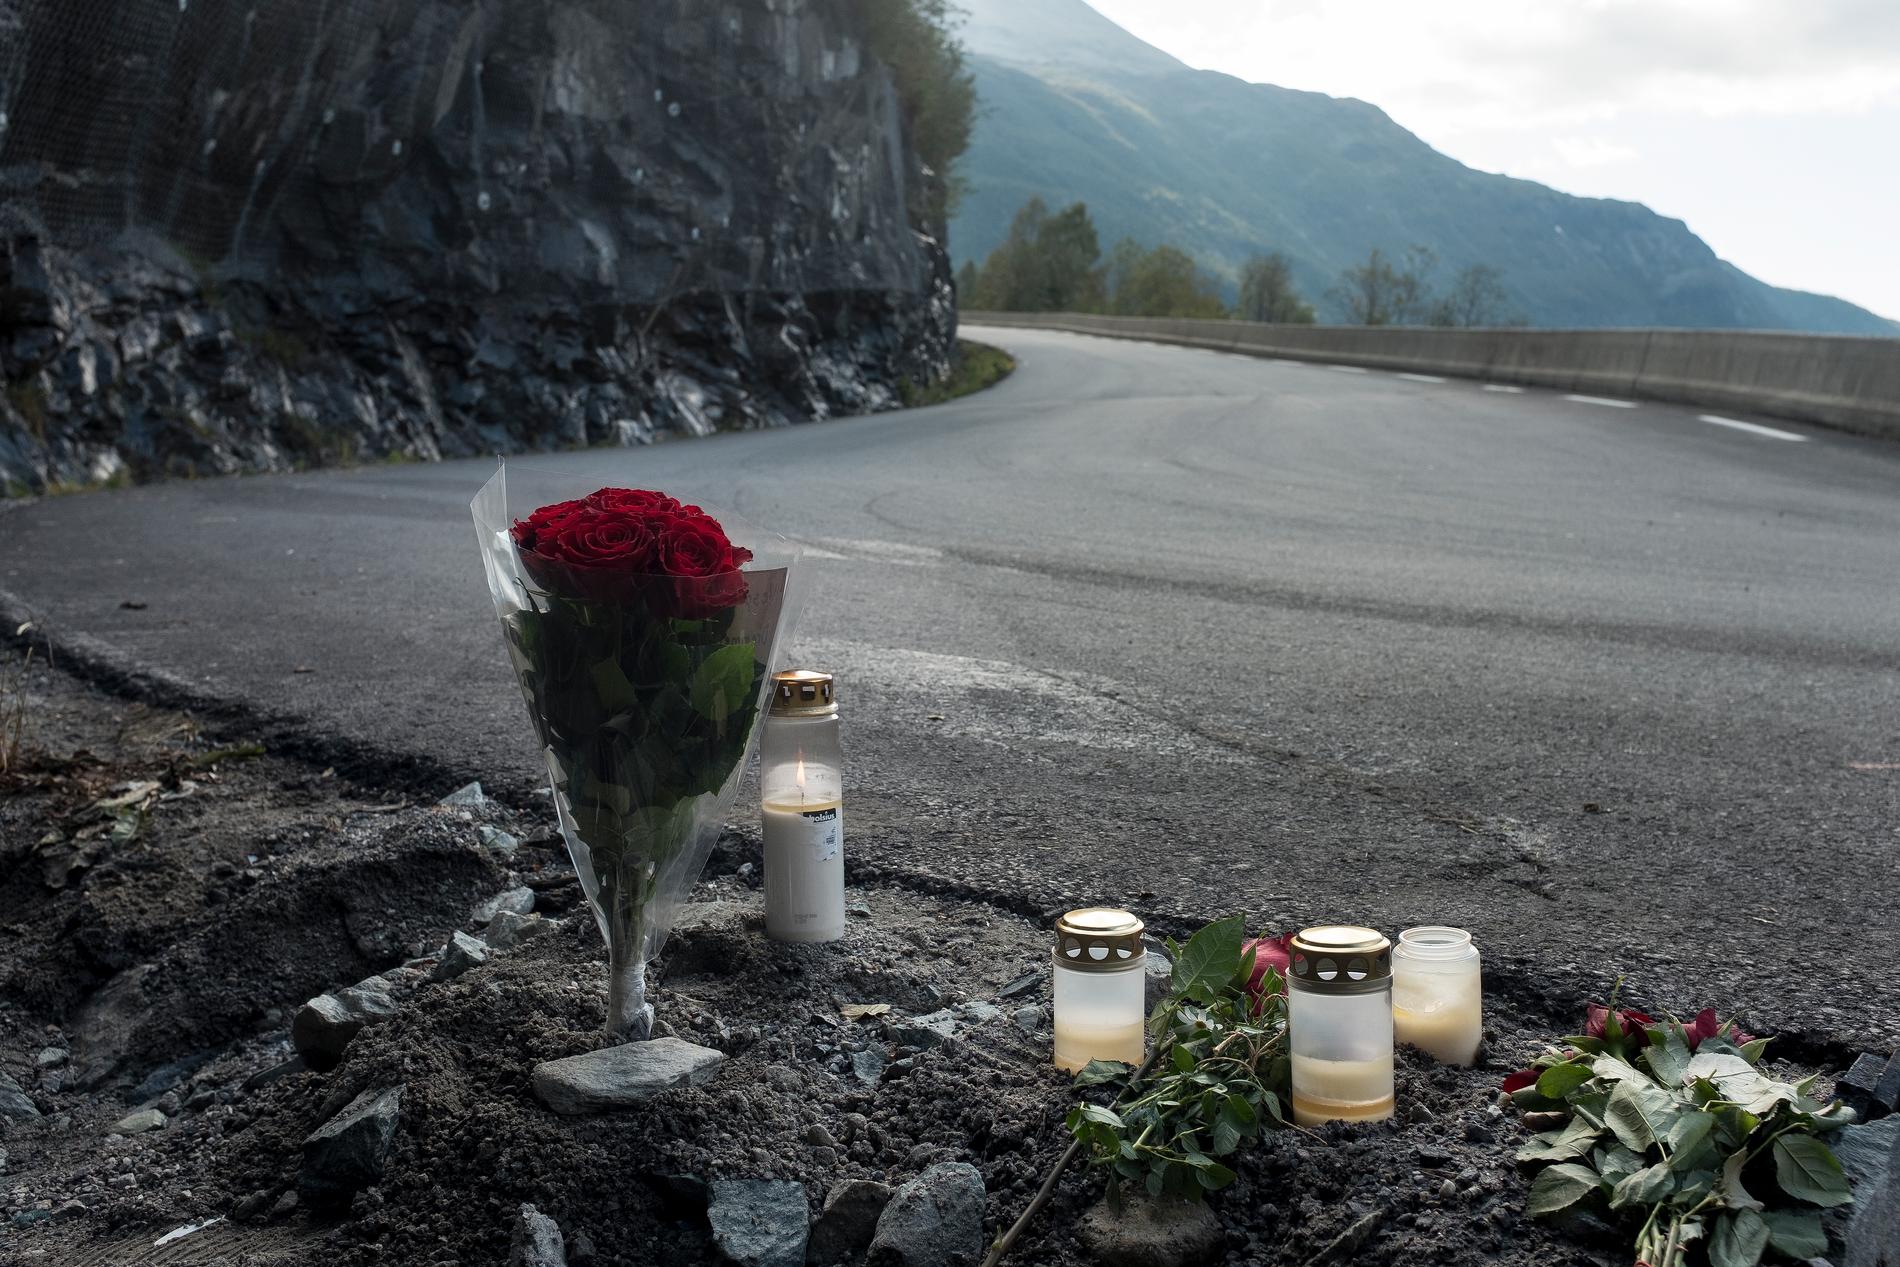 Tre kvinner og to menn omkom søndag da en veteranbil kjørte inn i en fjellvegg på Rjukan nær Gaustadtoppen.
Foto: Carina Johansen / NTB scanpix